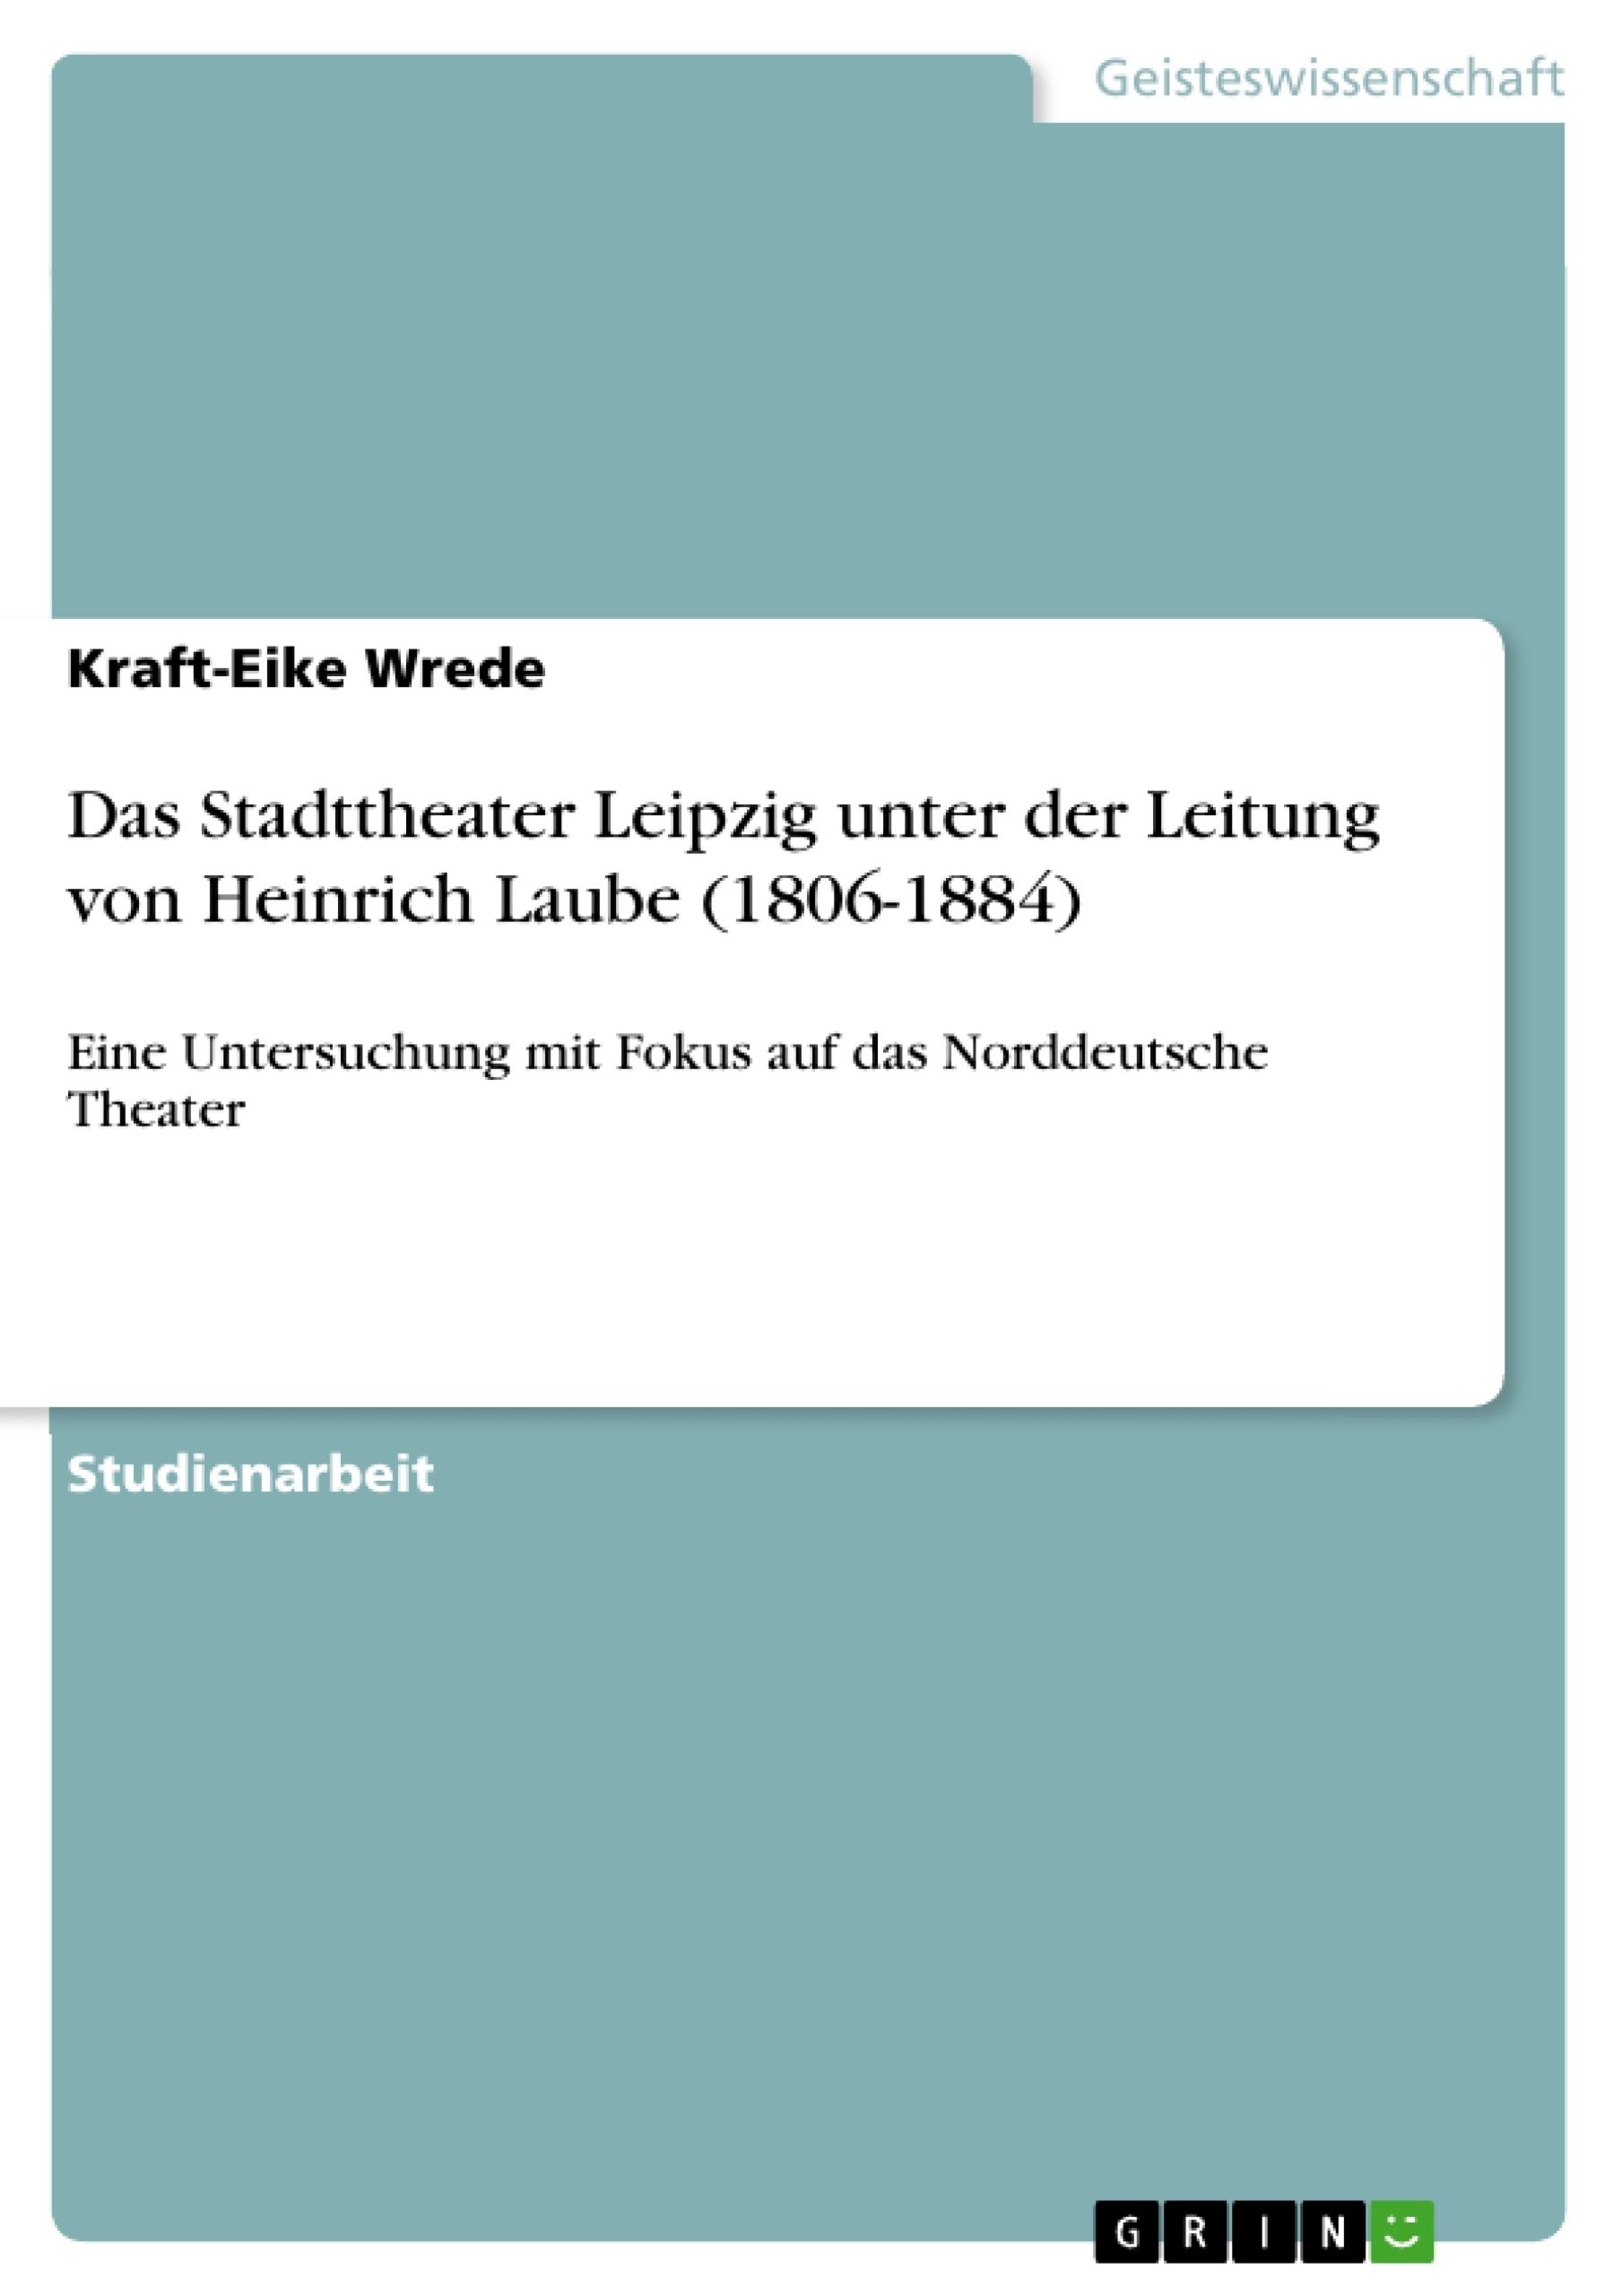 Titre: Das Stadttheater Leipzig unter der Leitung von Heinrich Laube (1806-1884)